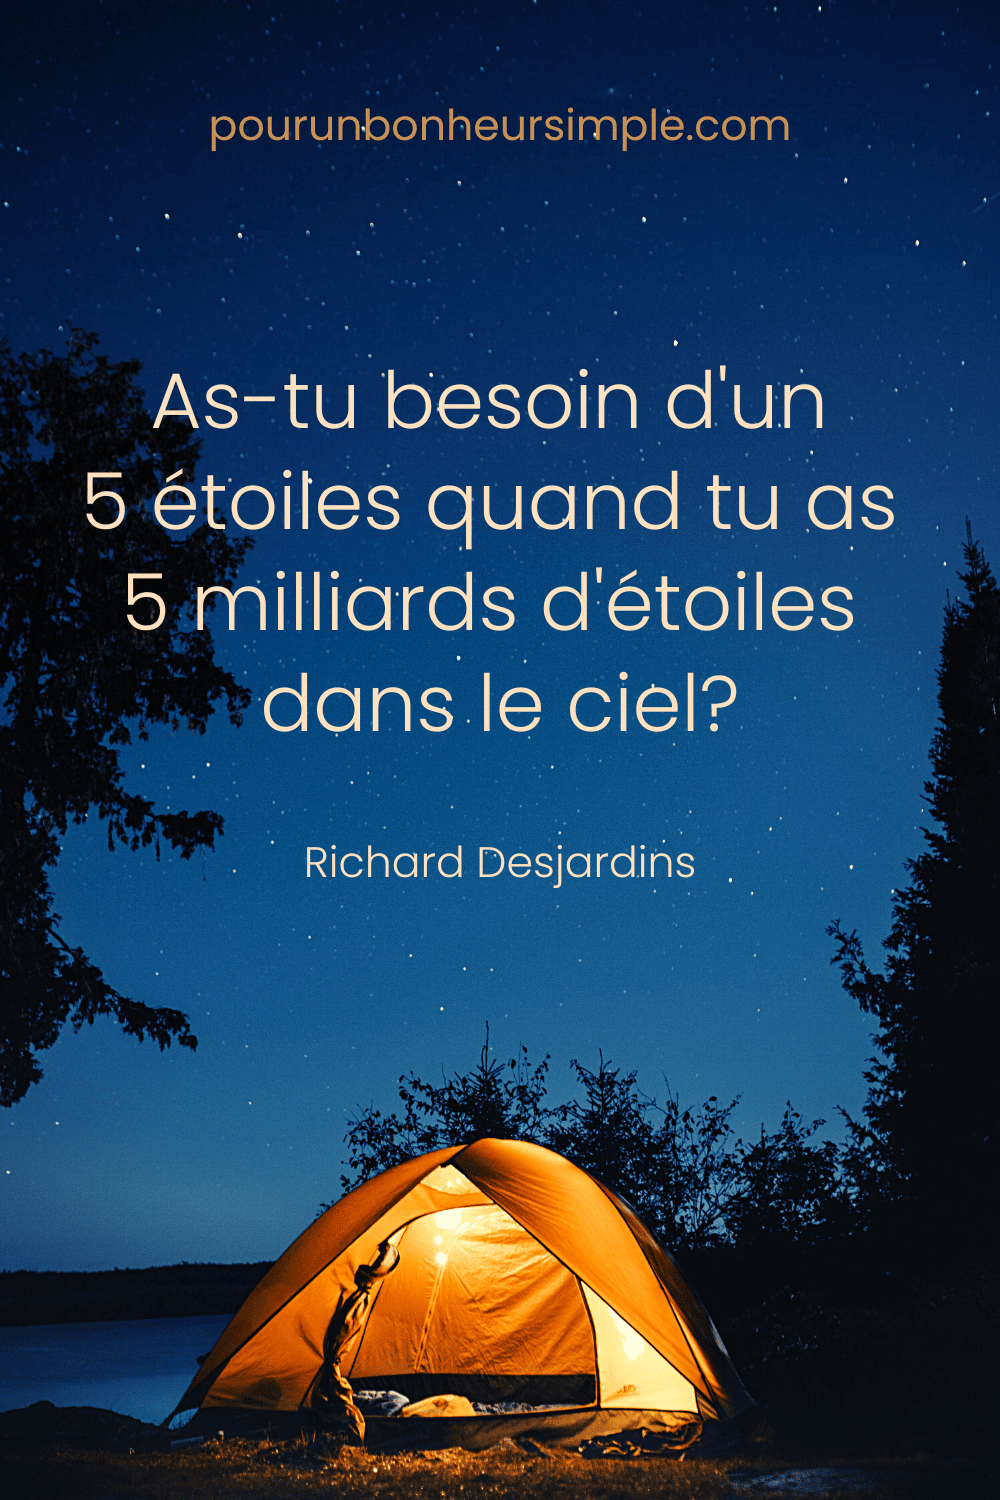 J'adore cette citation du chanteur-compositeur québécois Richard Desjardins qui me ramène à mon bonheur de la vie en camping! Elle se lit comme suit: "As-tu besoin d'un 5 étoiles quand tu as 5 milliards d'étoile dans le ciel?". Un visuel du blog Pour un bonheur simple.